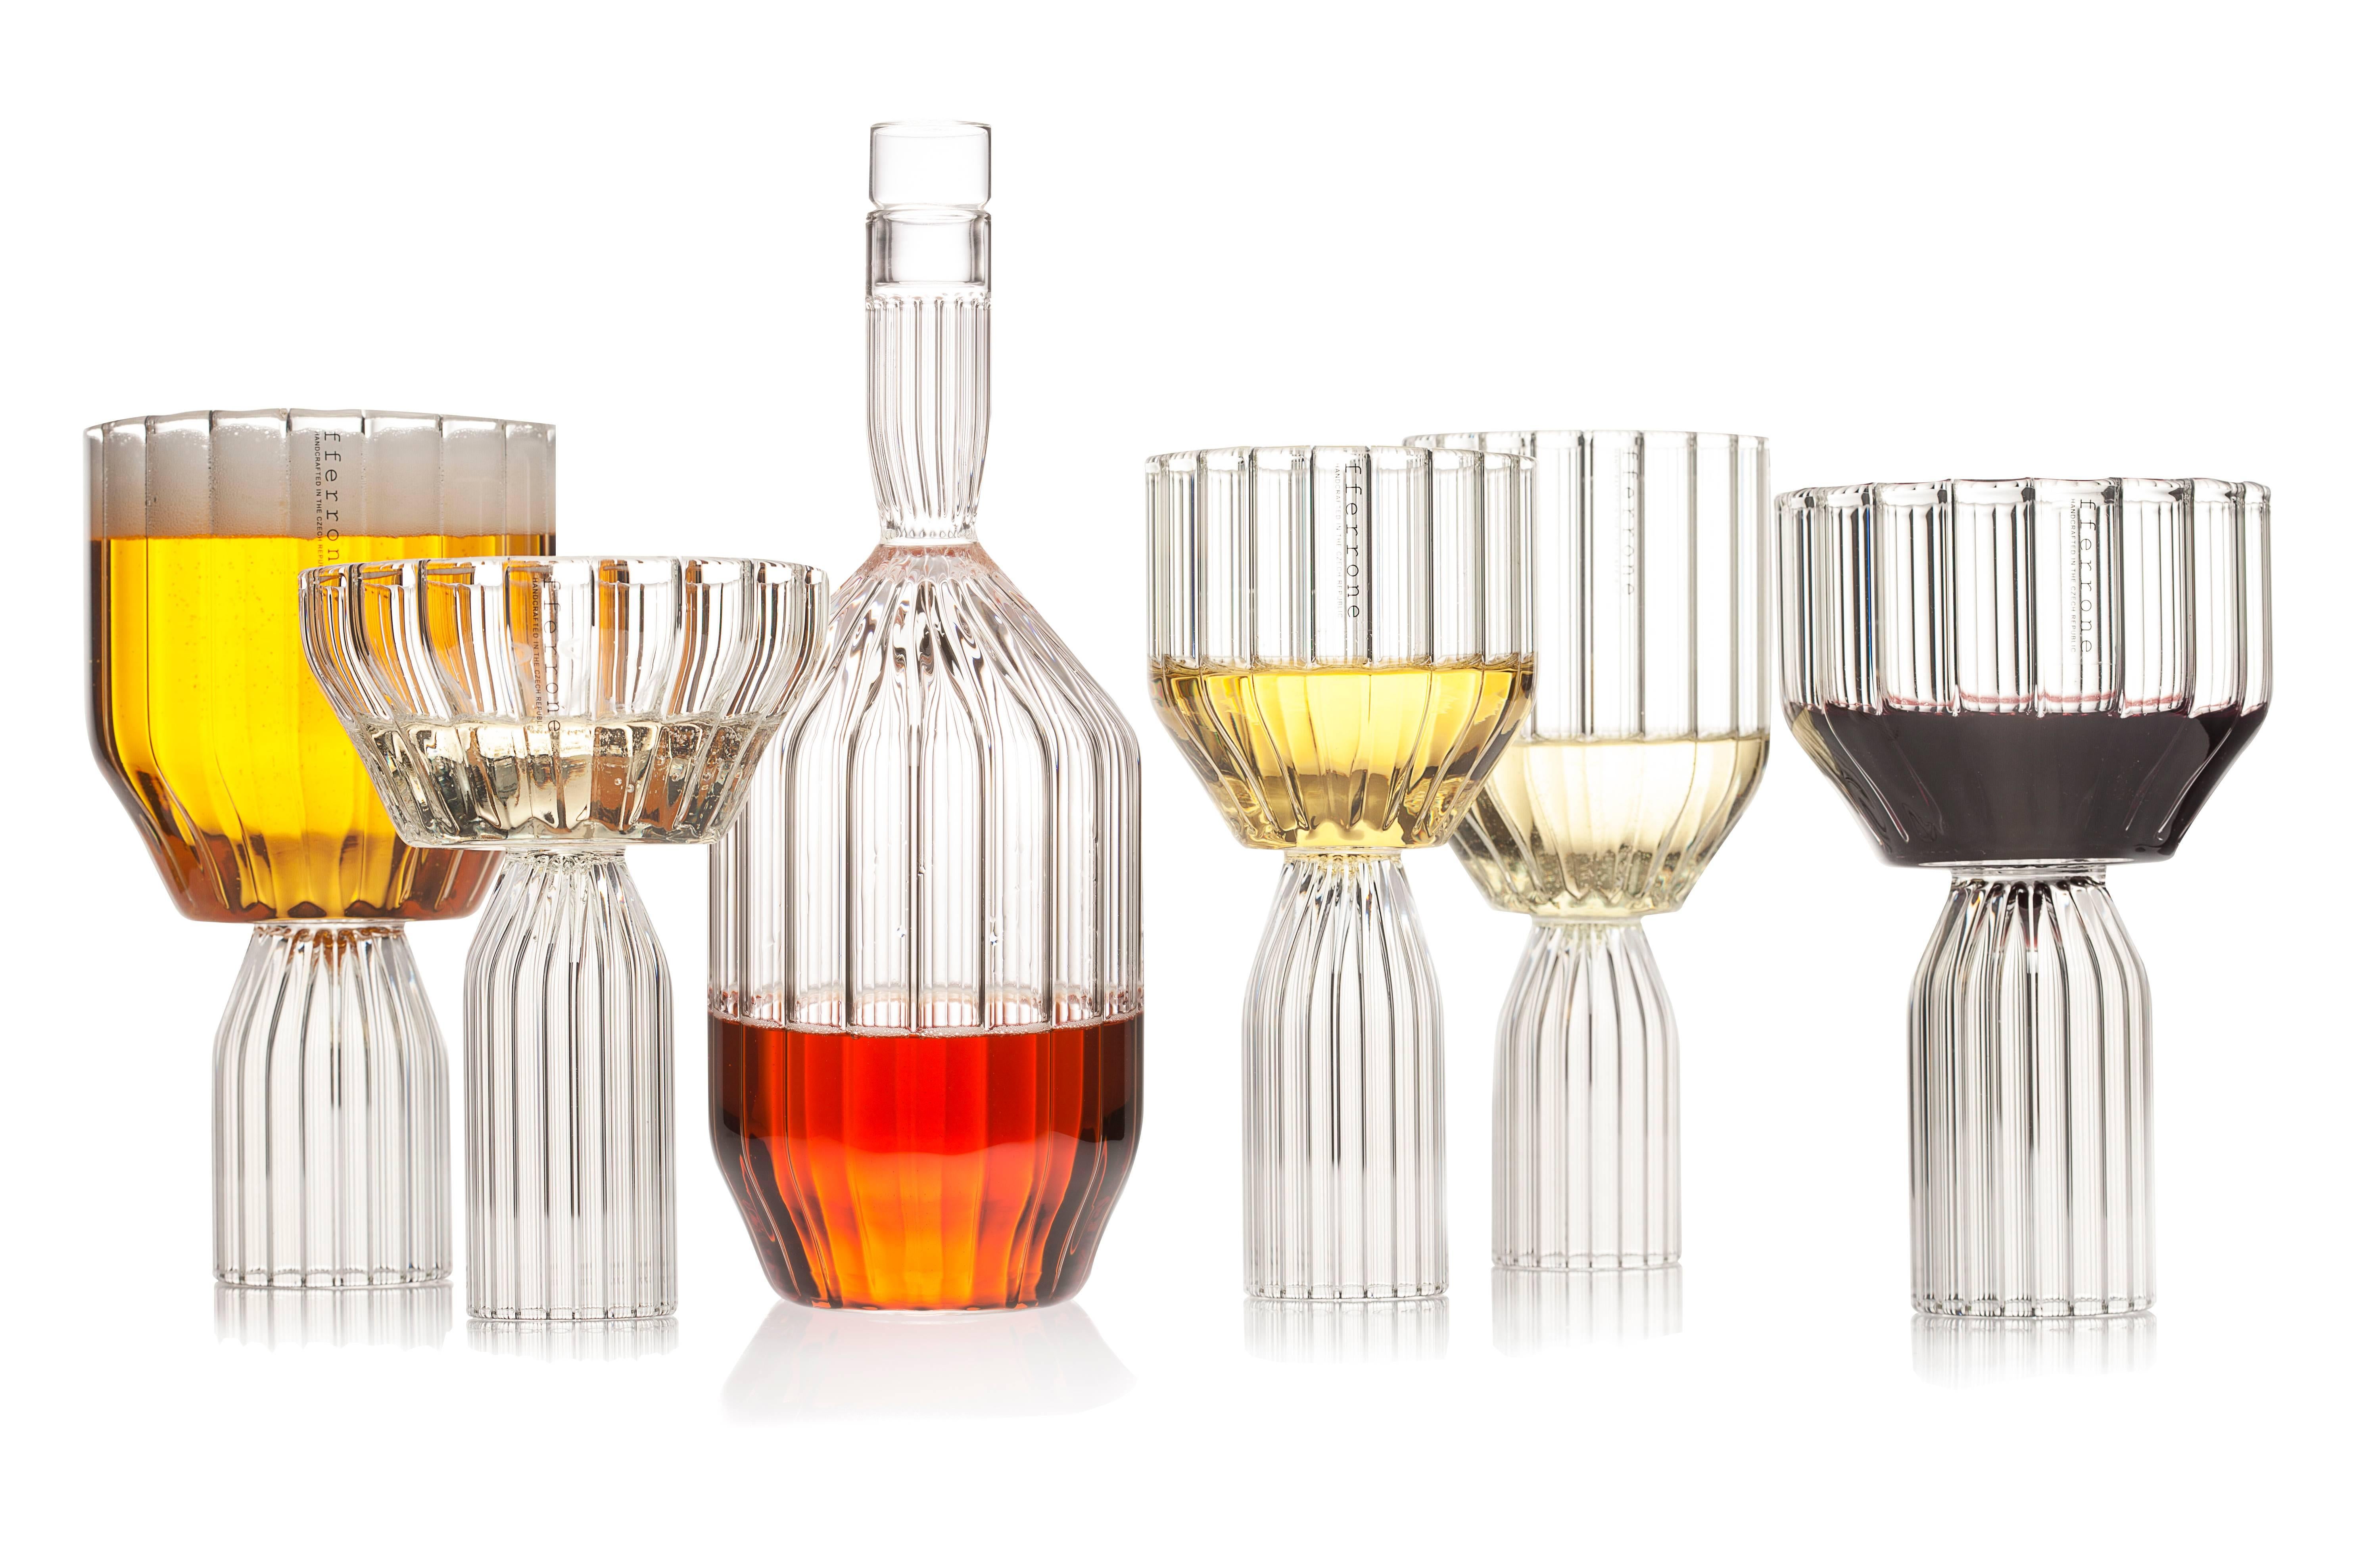 Une paire de verre tchèque contemporain fait à la main est le parfait grand gobelet à vin ou verre à cocktail pour les boissons. Excellent pour tout verre de boisson ou d'eau.

La collection Margot, qui représente la version moderne du verre